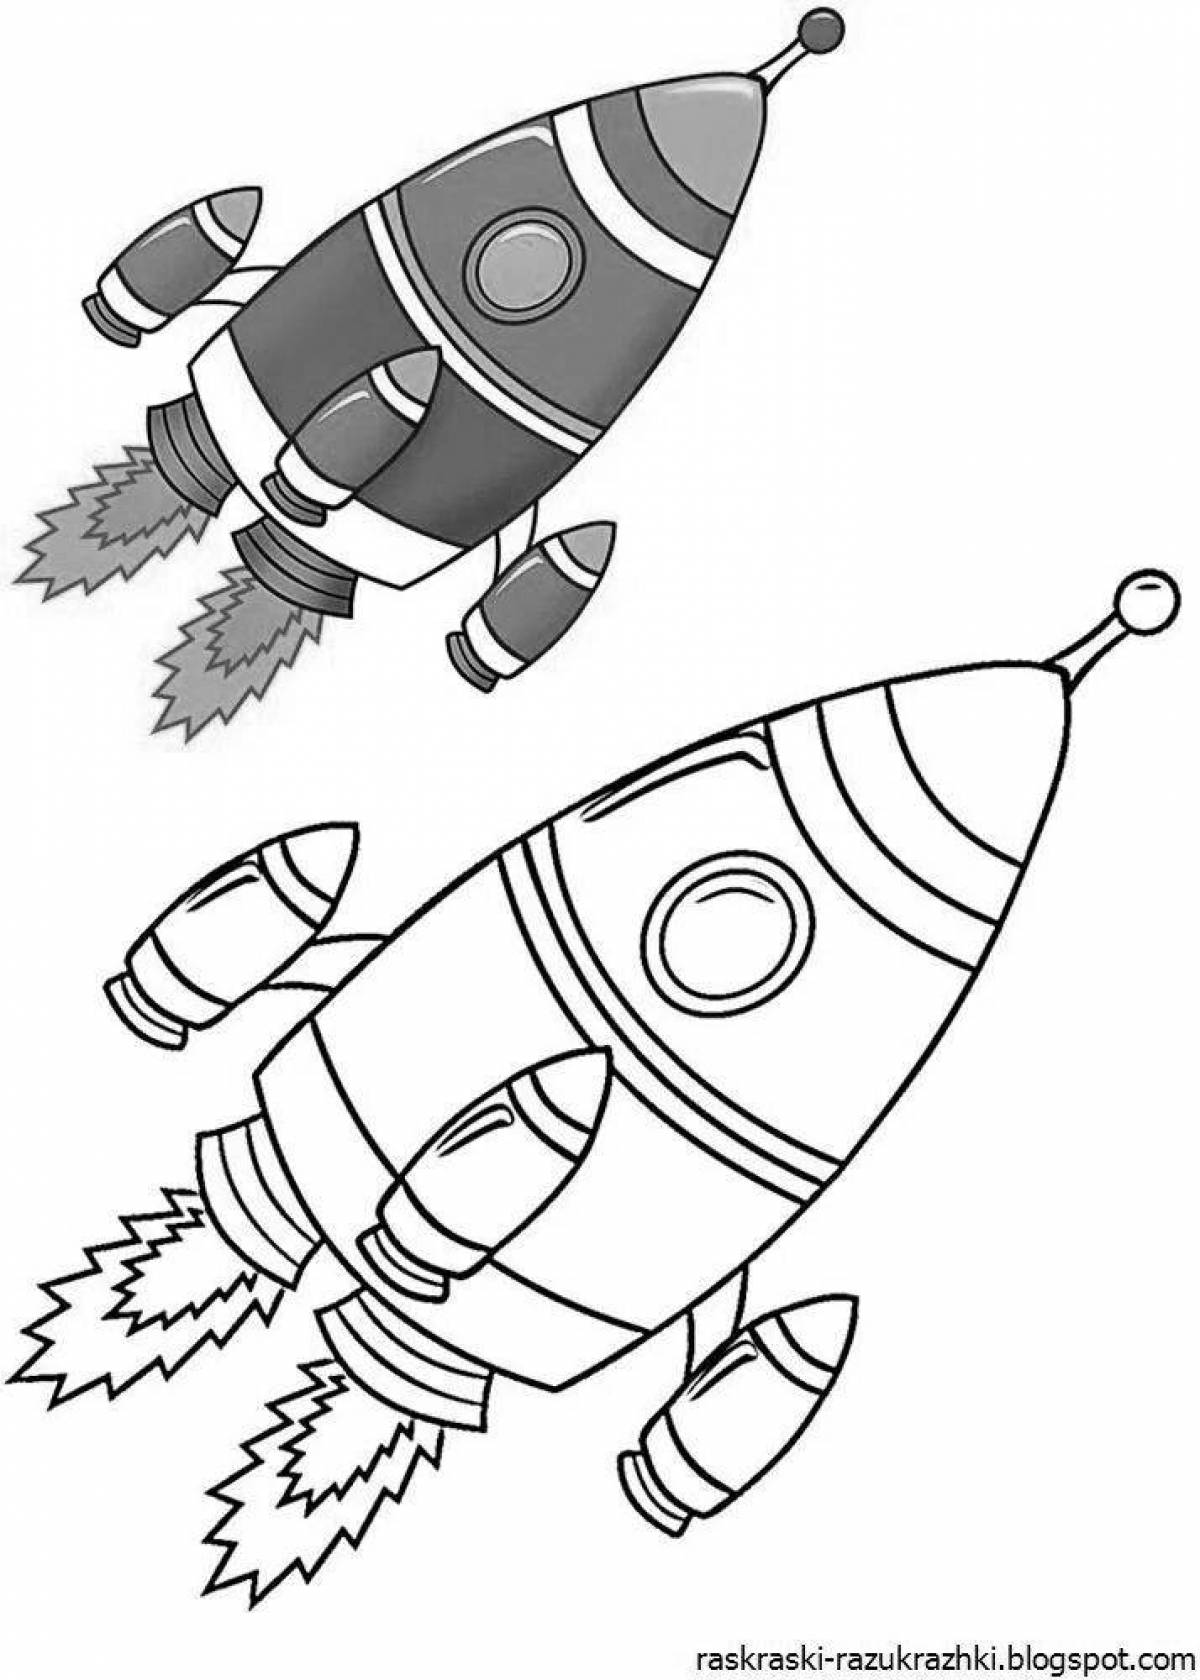 Увлекательная раскраска ракеты для детей